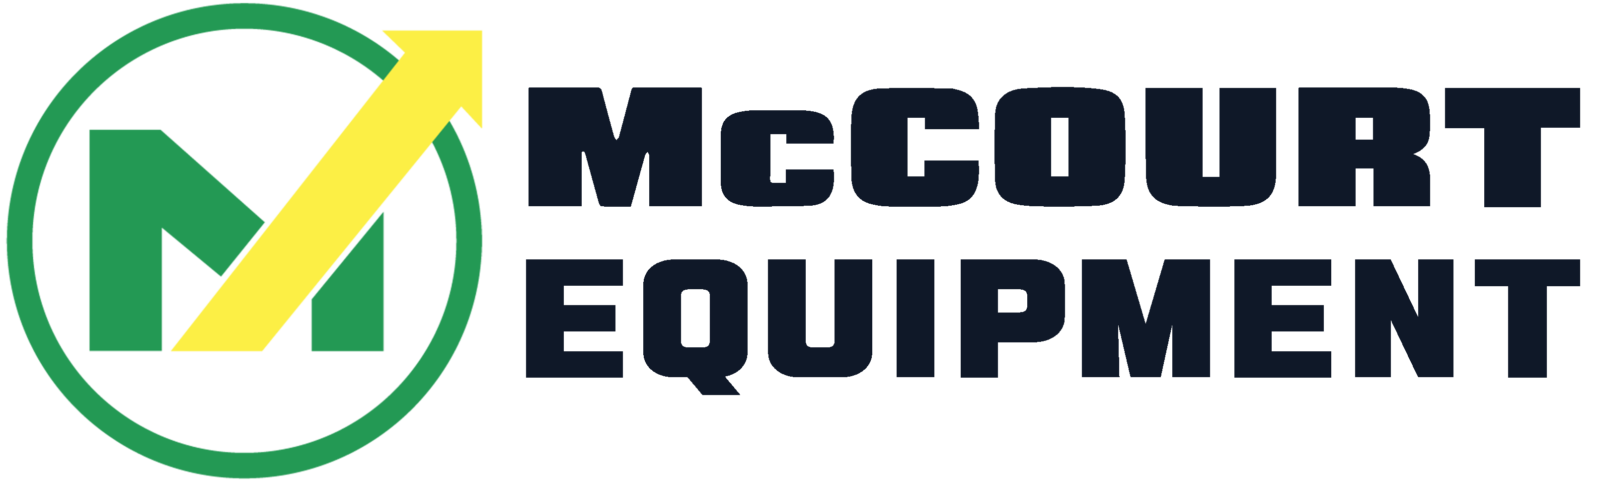 McCourt Equipment INC.